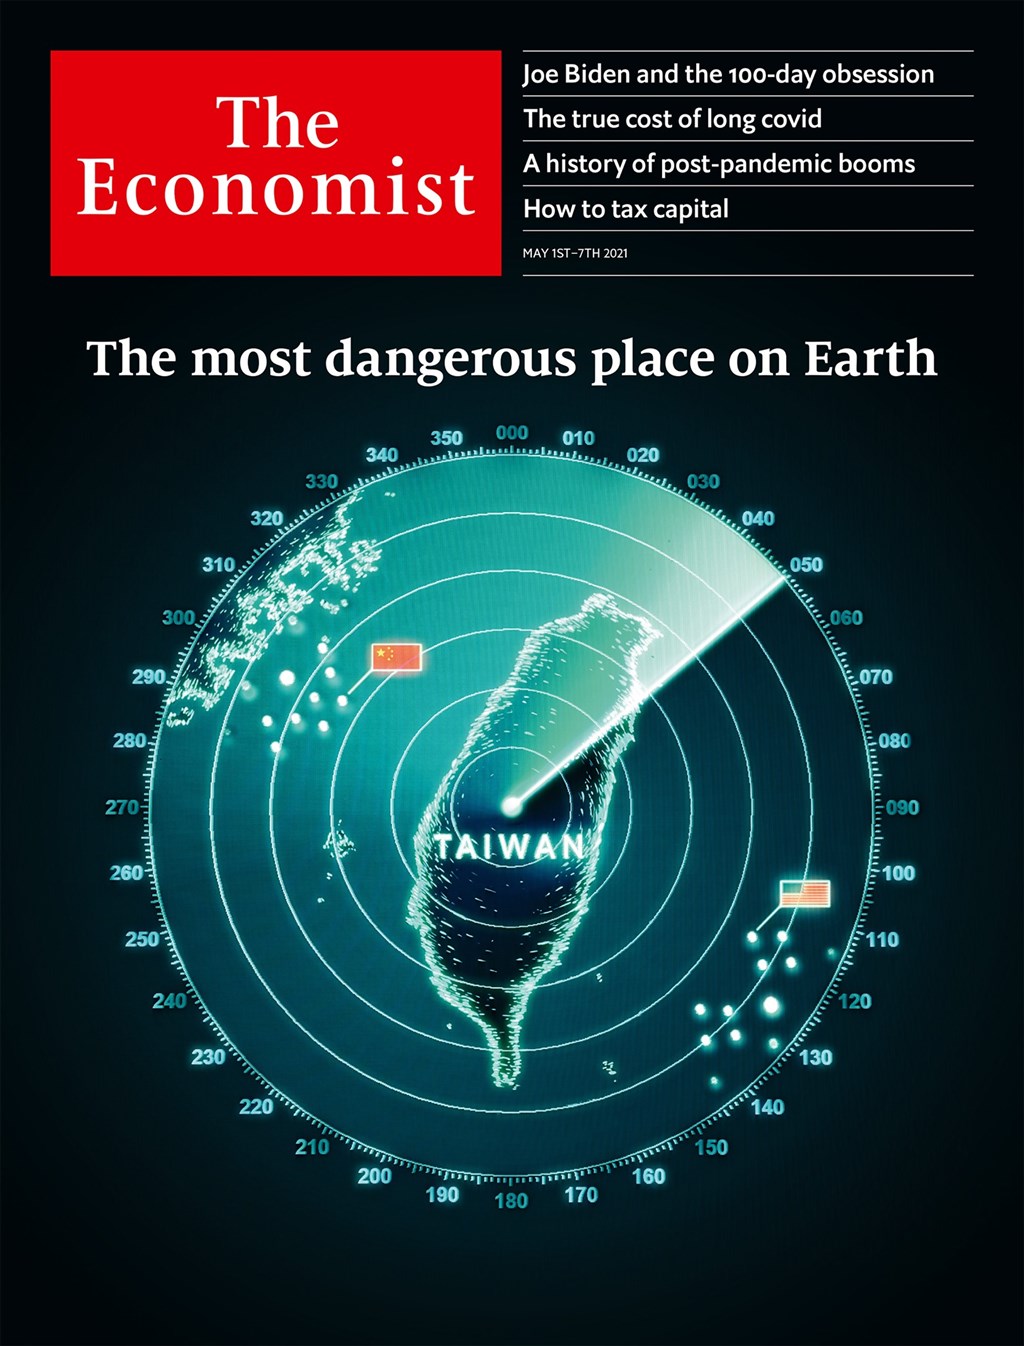 “经济学人”30日公布当期封面，以台湾雷达图为主视觉，左有中共五星旗、右有美国星条旗，并称这是“地球上最危险地区”。